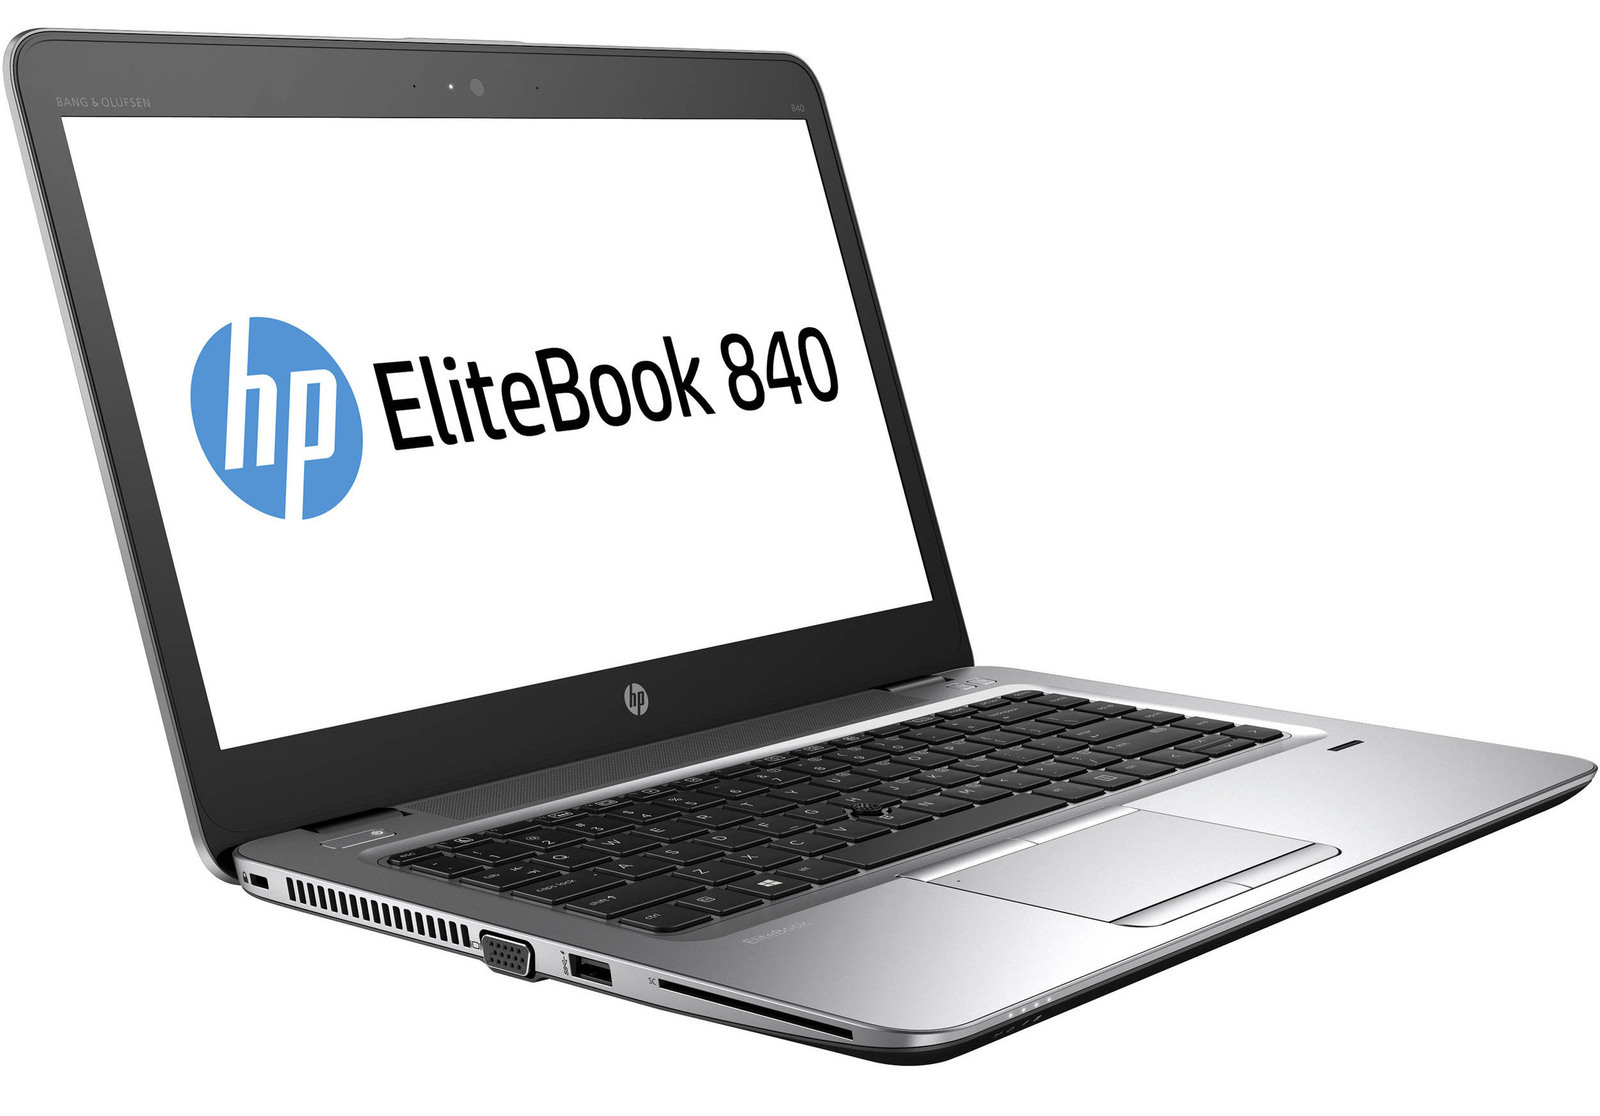 HP EliteBook 840 G4 Intel i5 7200U 2.50GHz 8GB RAM 256GB SSD 14" Win 10 - B Grade Full Size Image